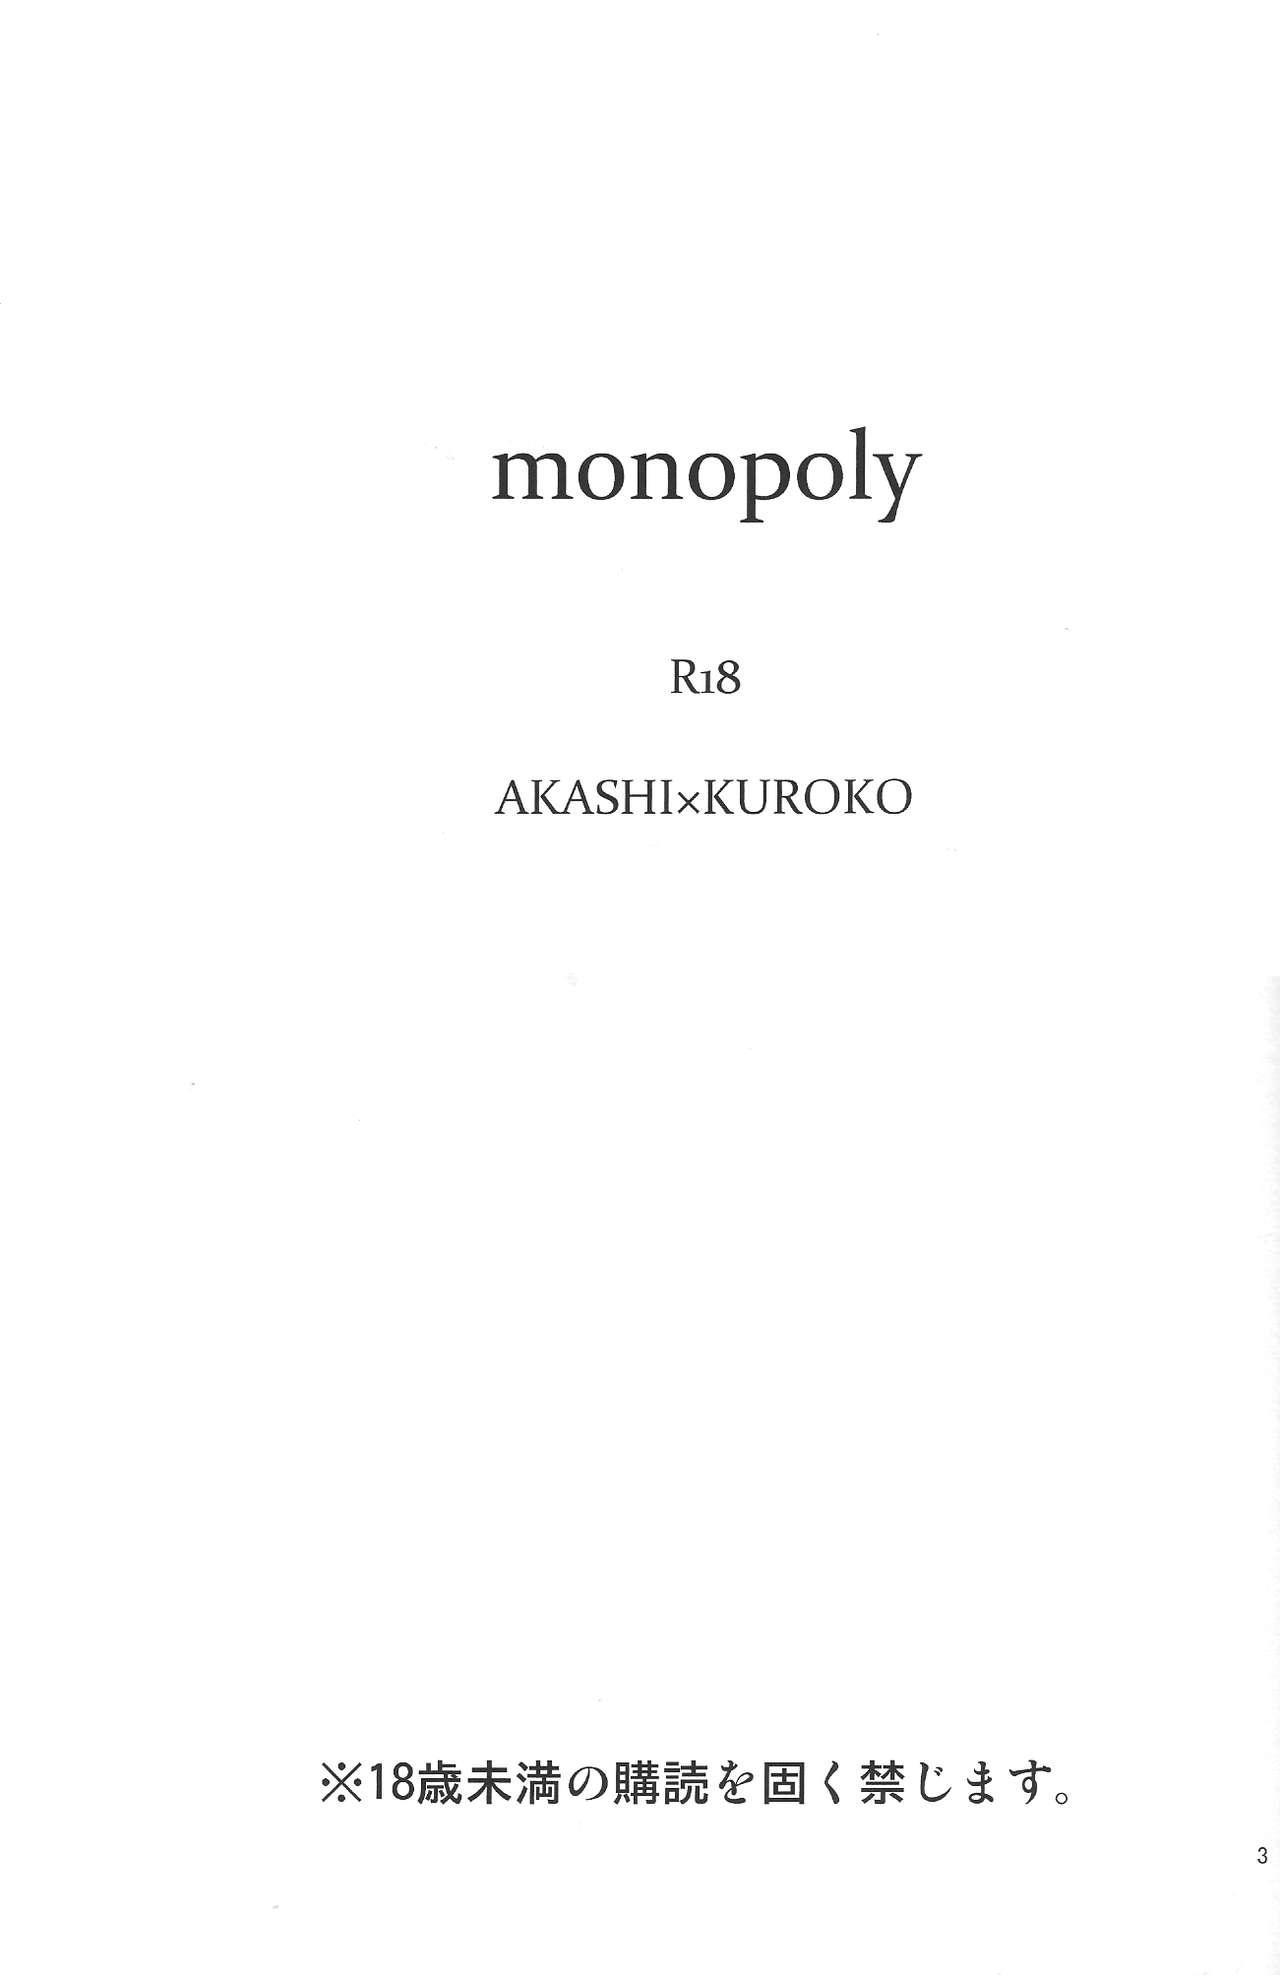 Chacal Monopoly - Kuroko no basuke Family Porn - Page 2